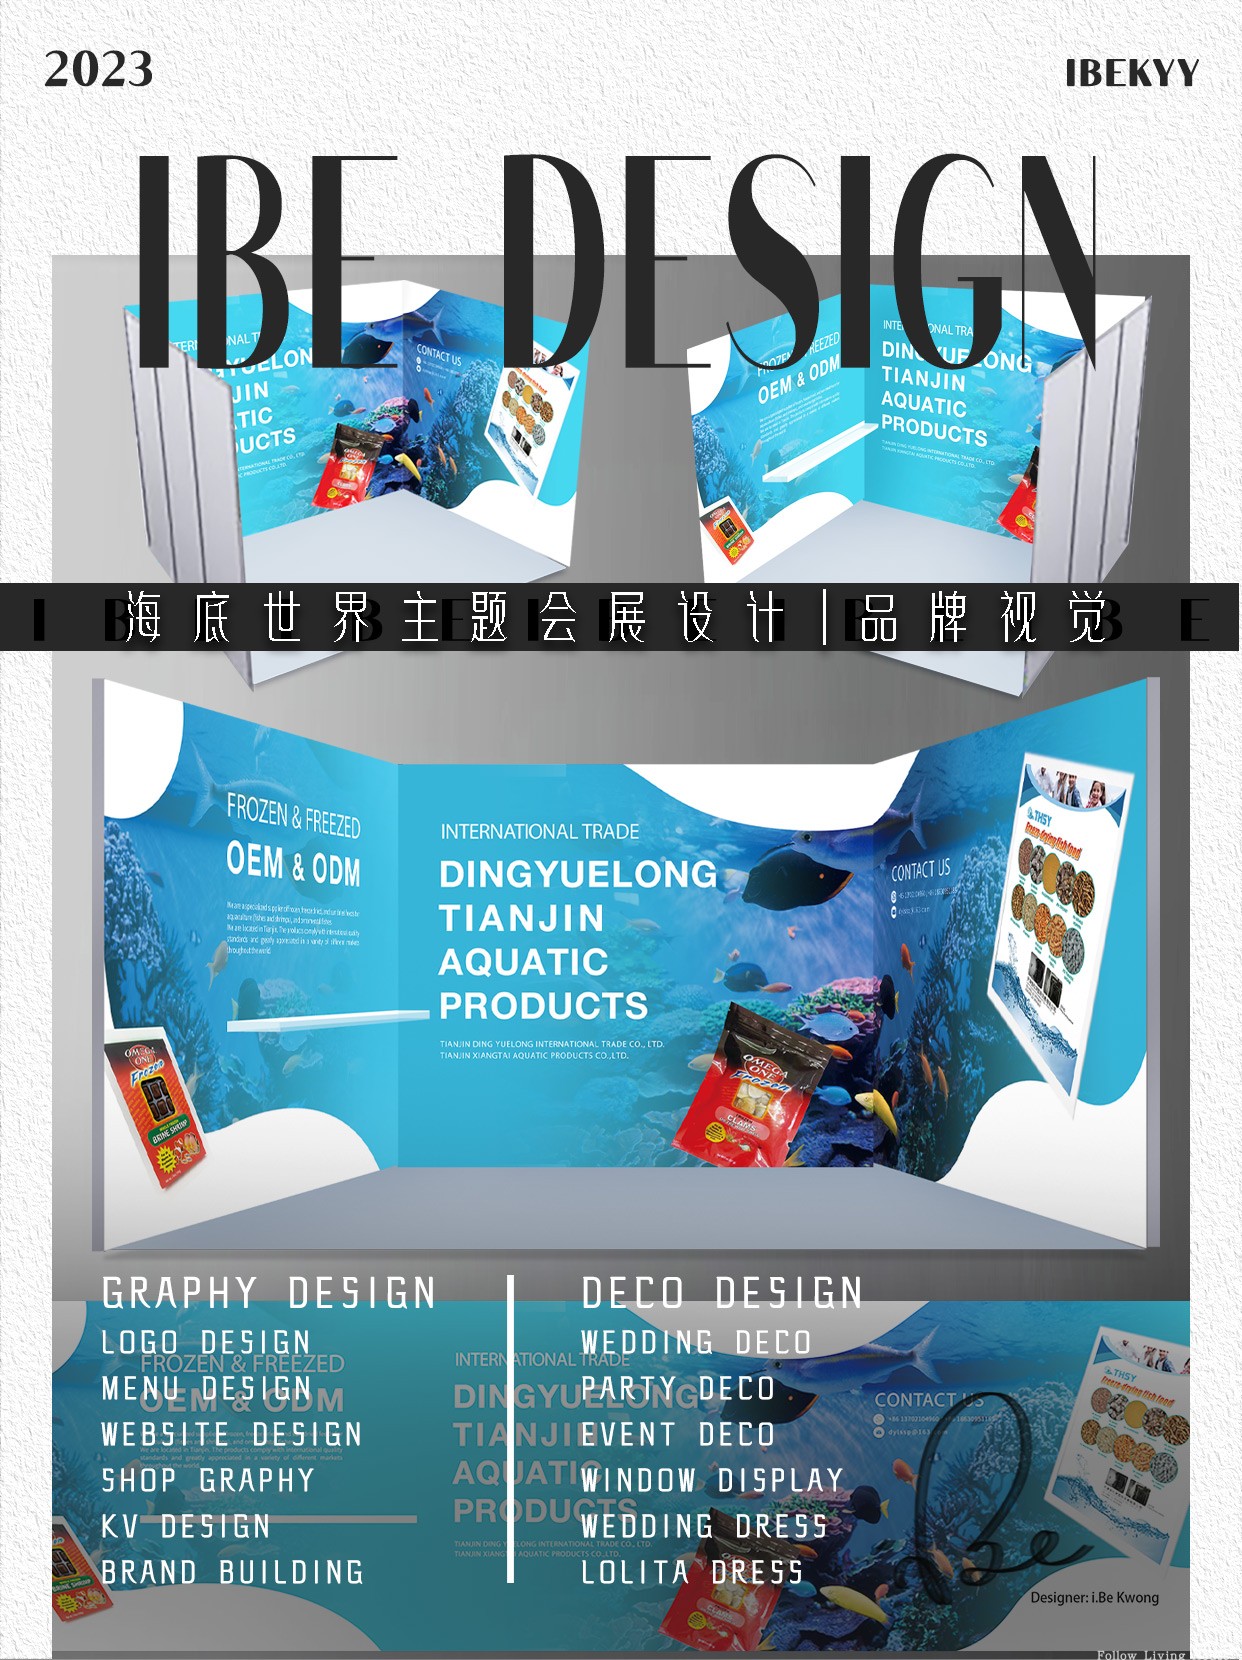 蓝色海洋海底世界主题展会设计会展布置印刷海报展位布置品牌设计